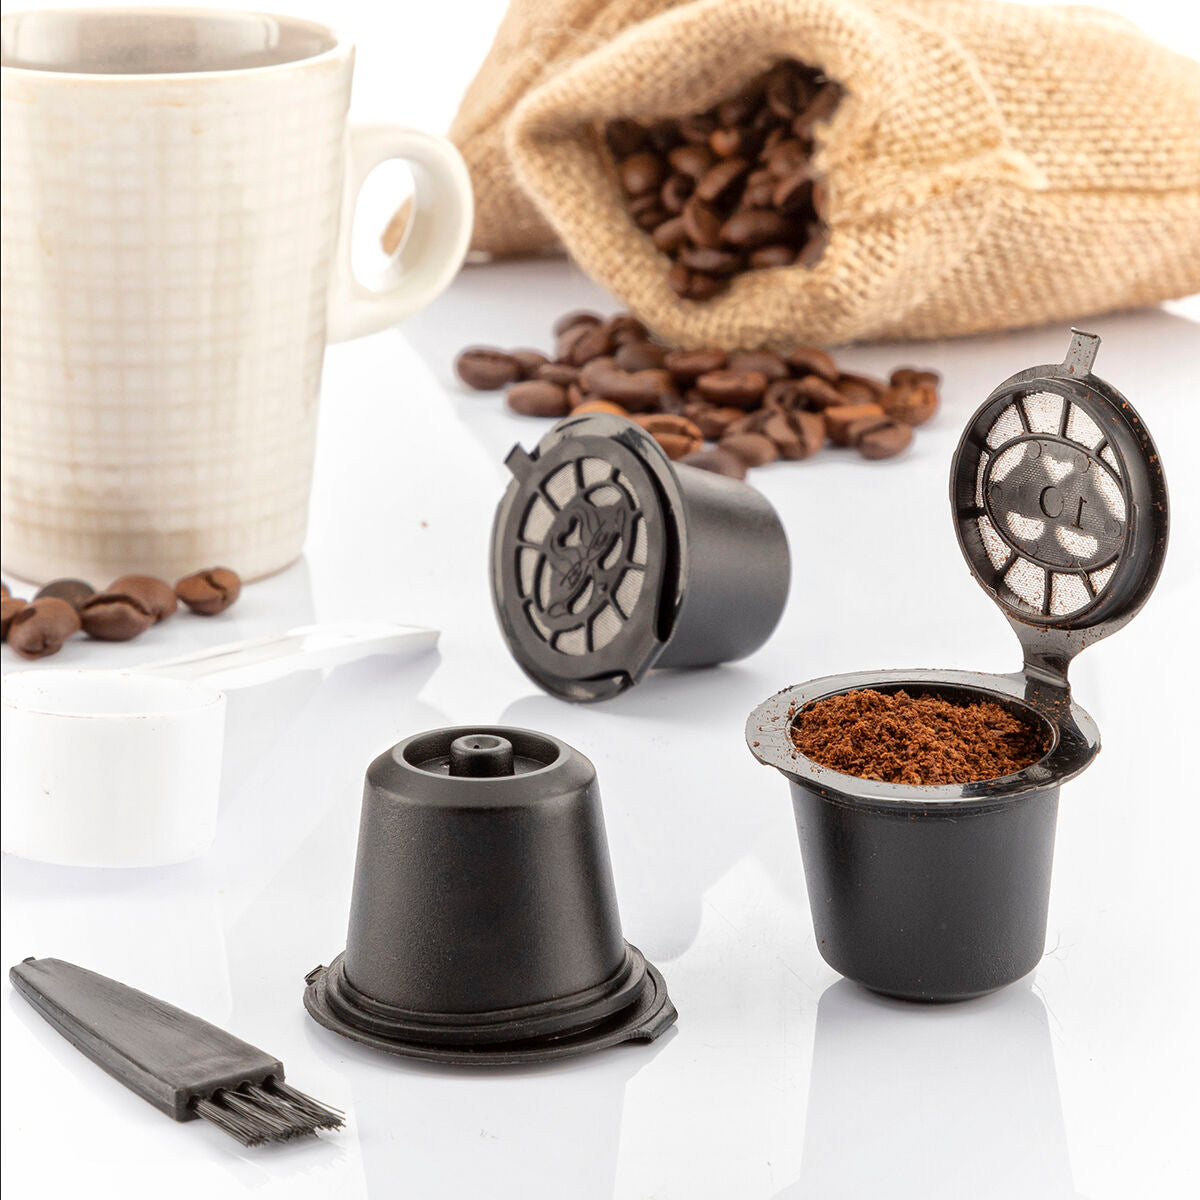 Herbruikbare koffiecapsules (Nespresso) - 3 stuks